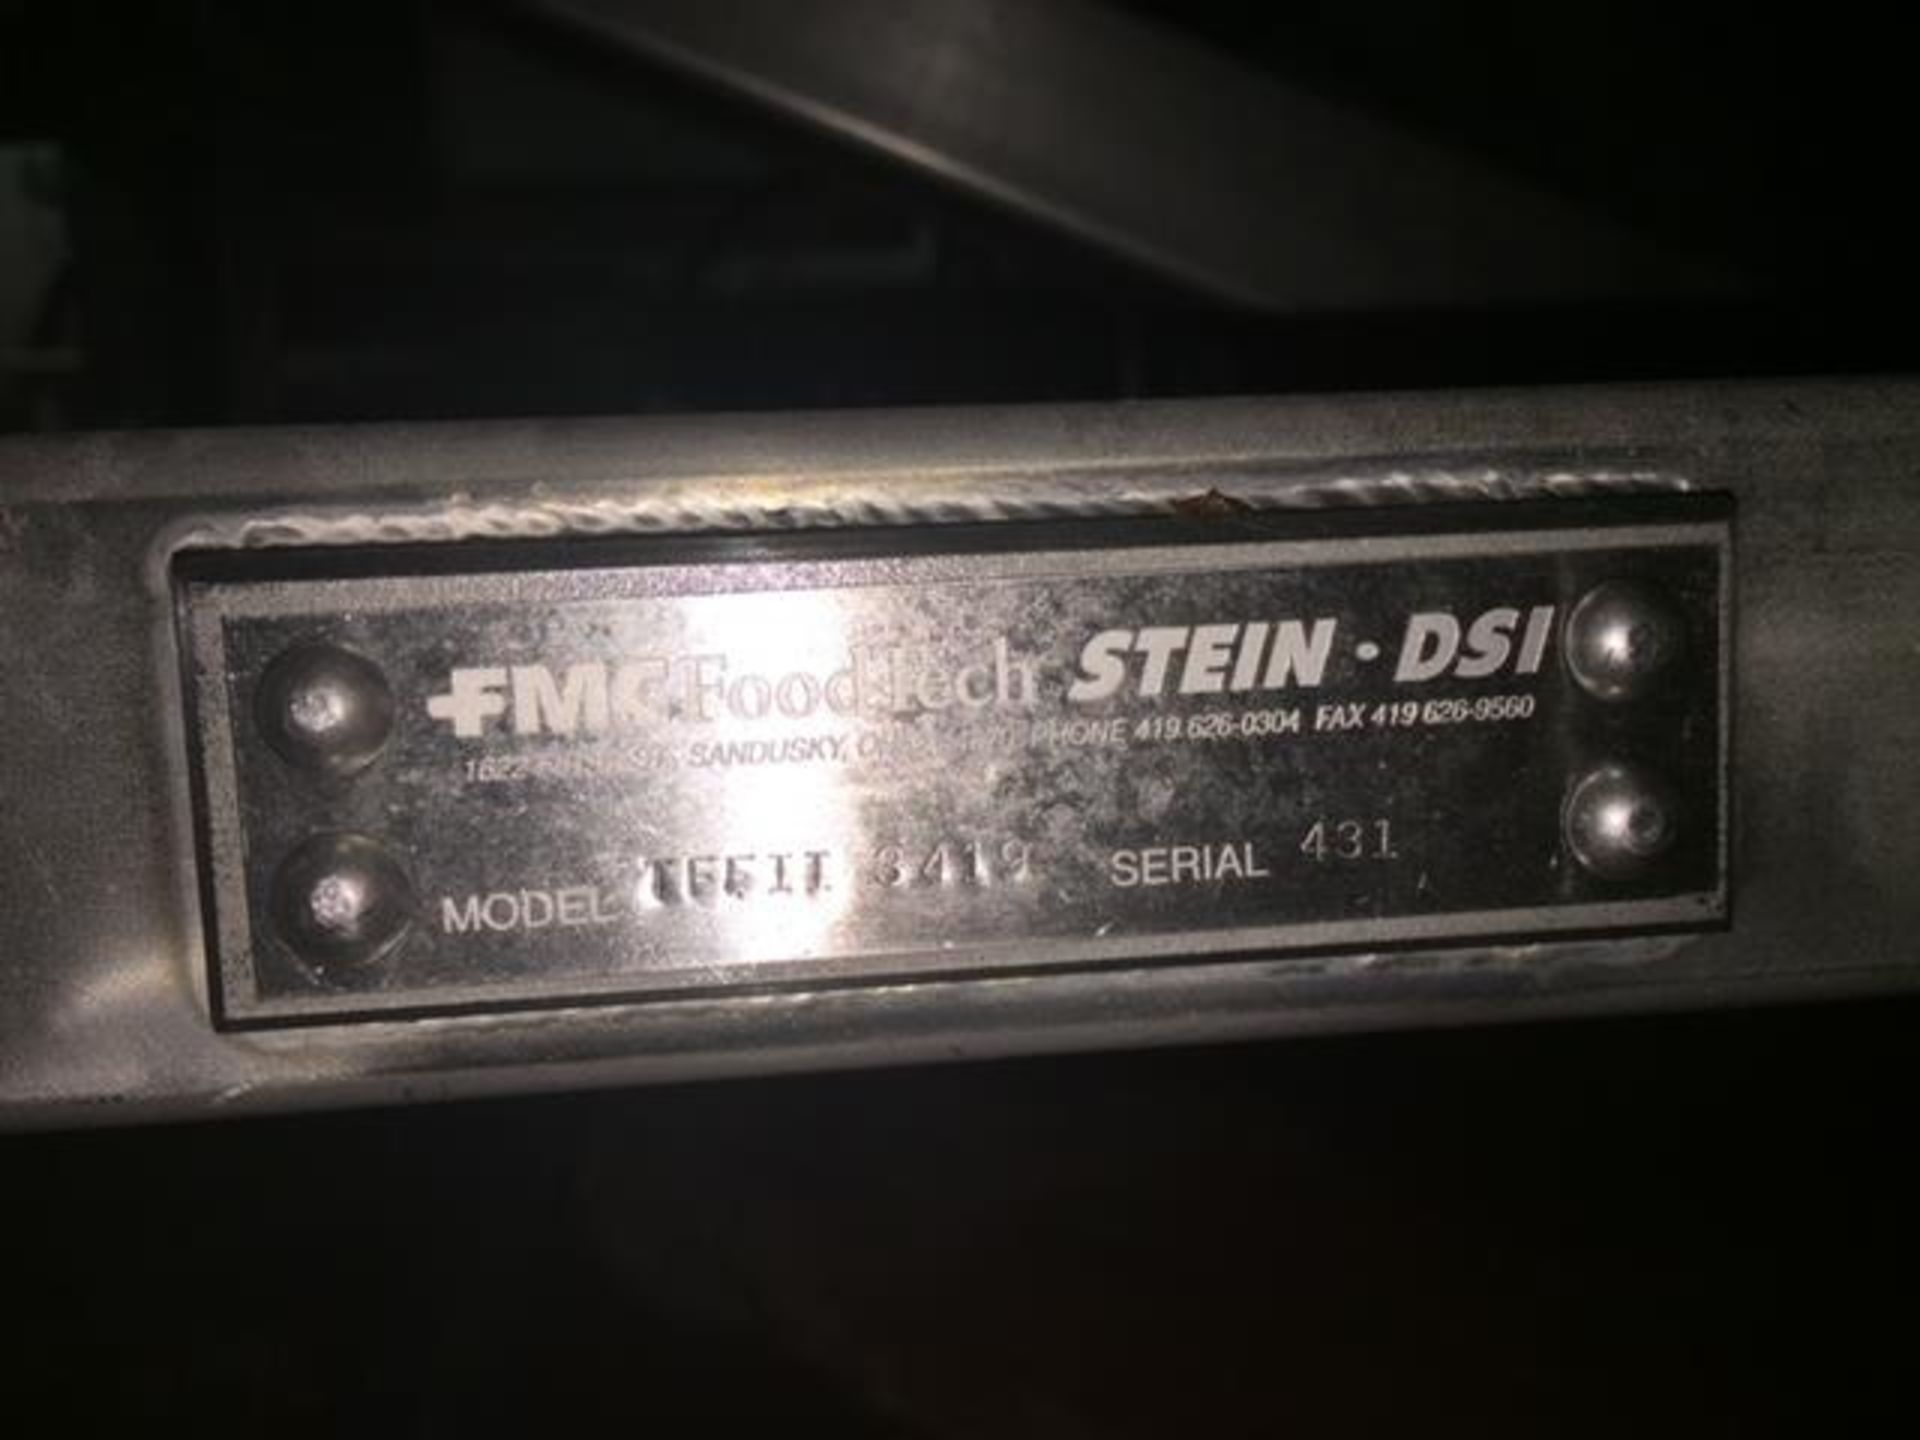 Stein 3419 Thermal Fin Model #TFFII Fryer, Serial #431 - Image 4 of 5